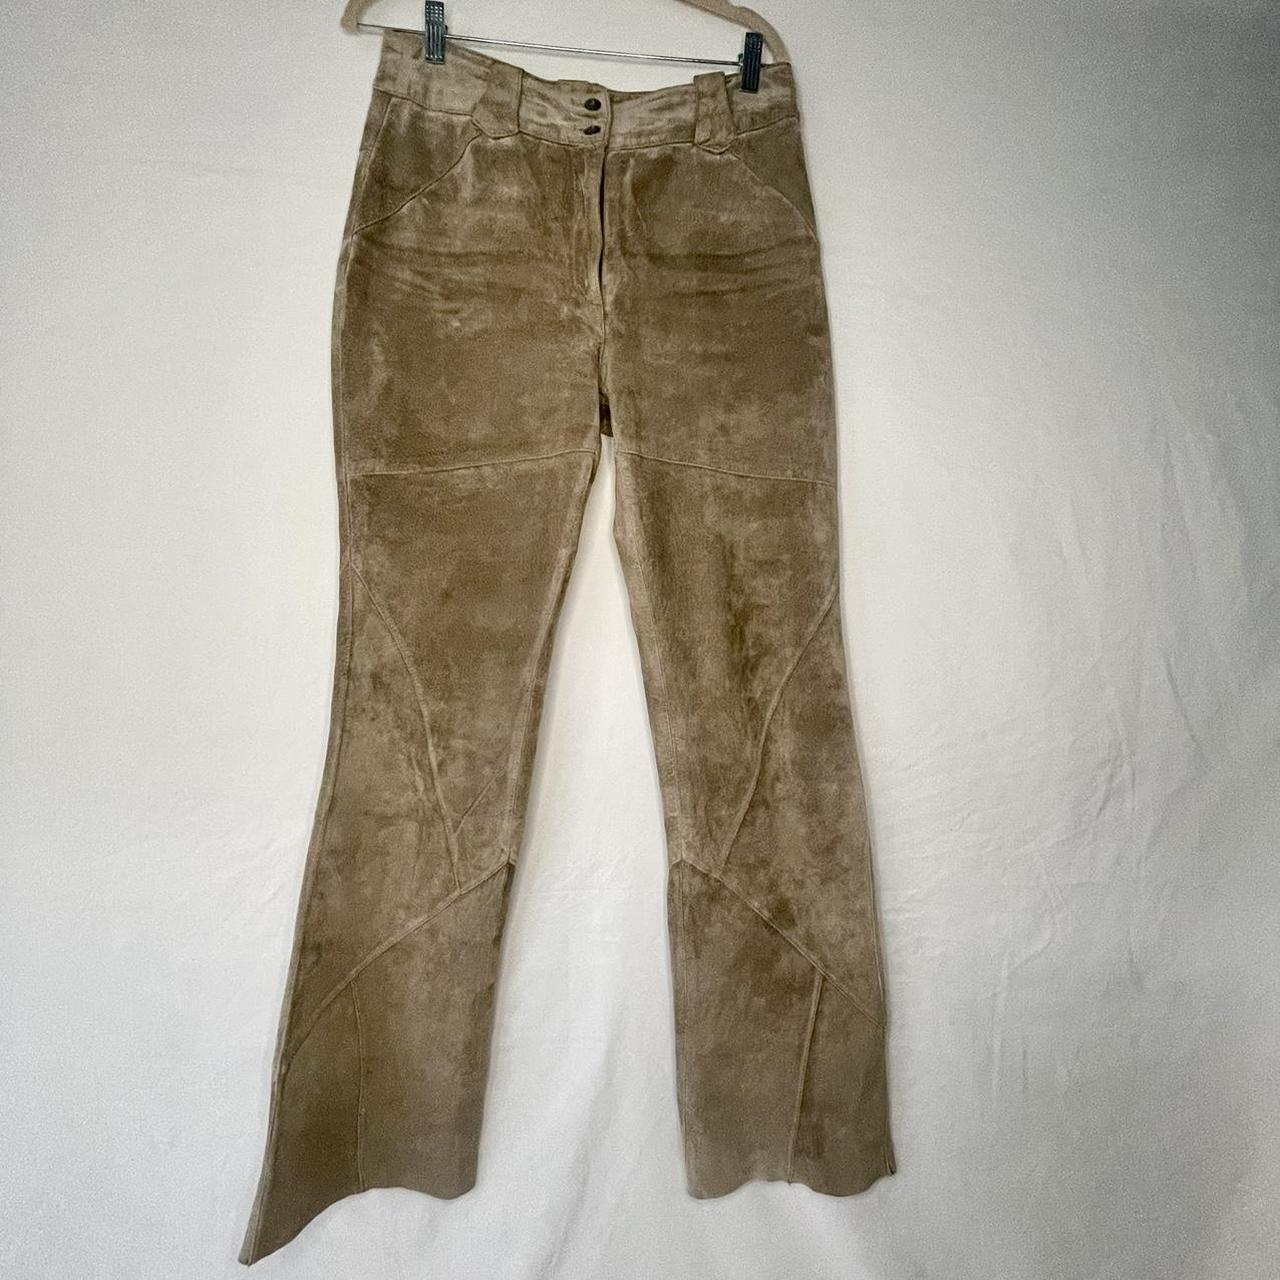 Leather pants by Charles Klein, pig suede, tan,... - Depop